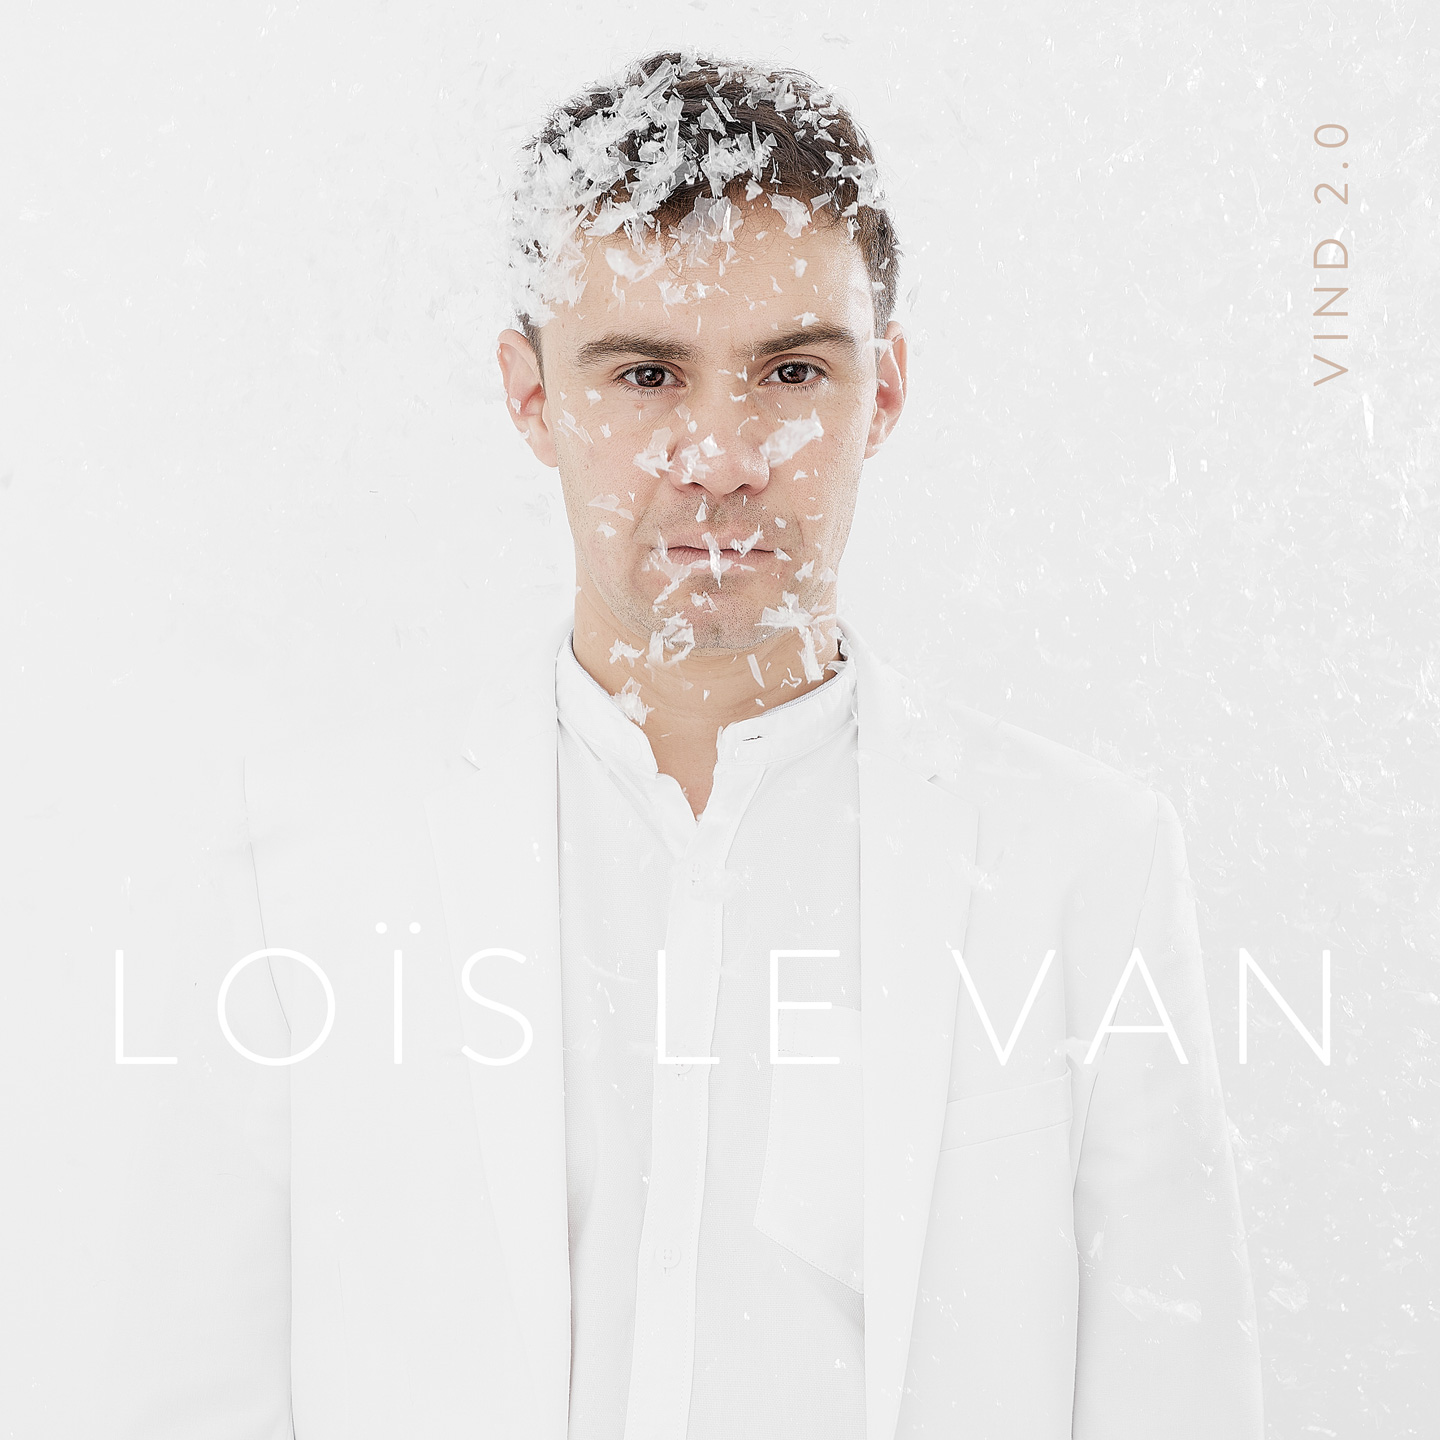 Loïs Le Van retrouve Sandrine Marchetti et Paul Jarret pour l'album Vind 2.0